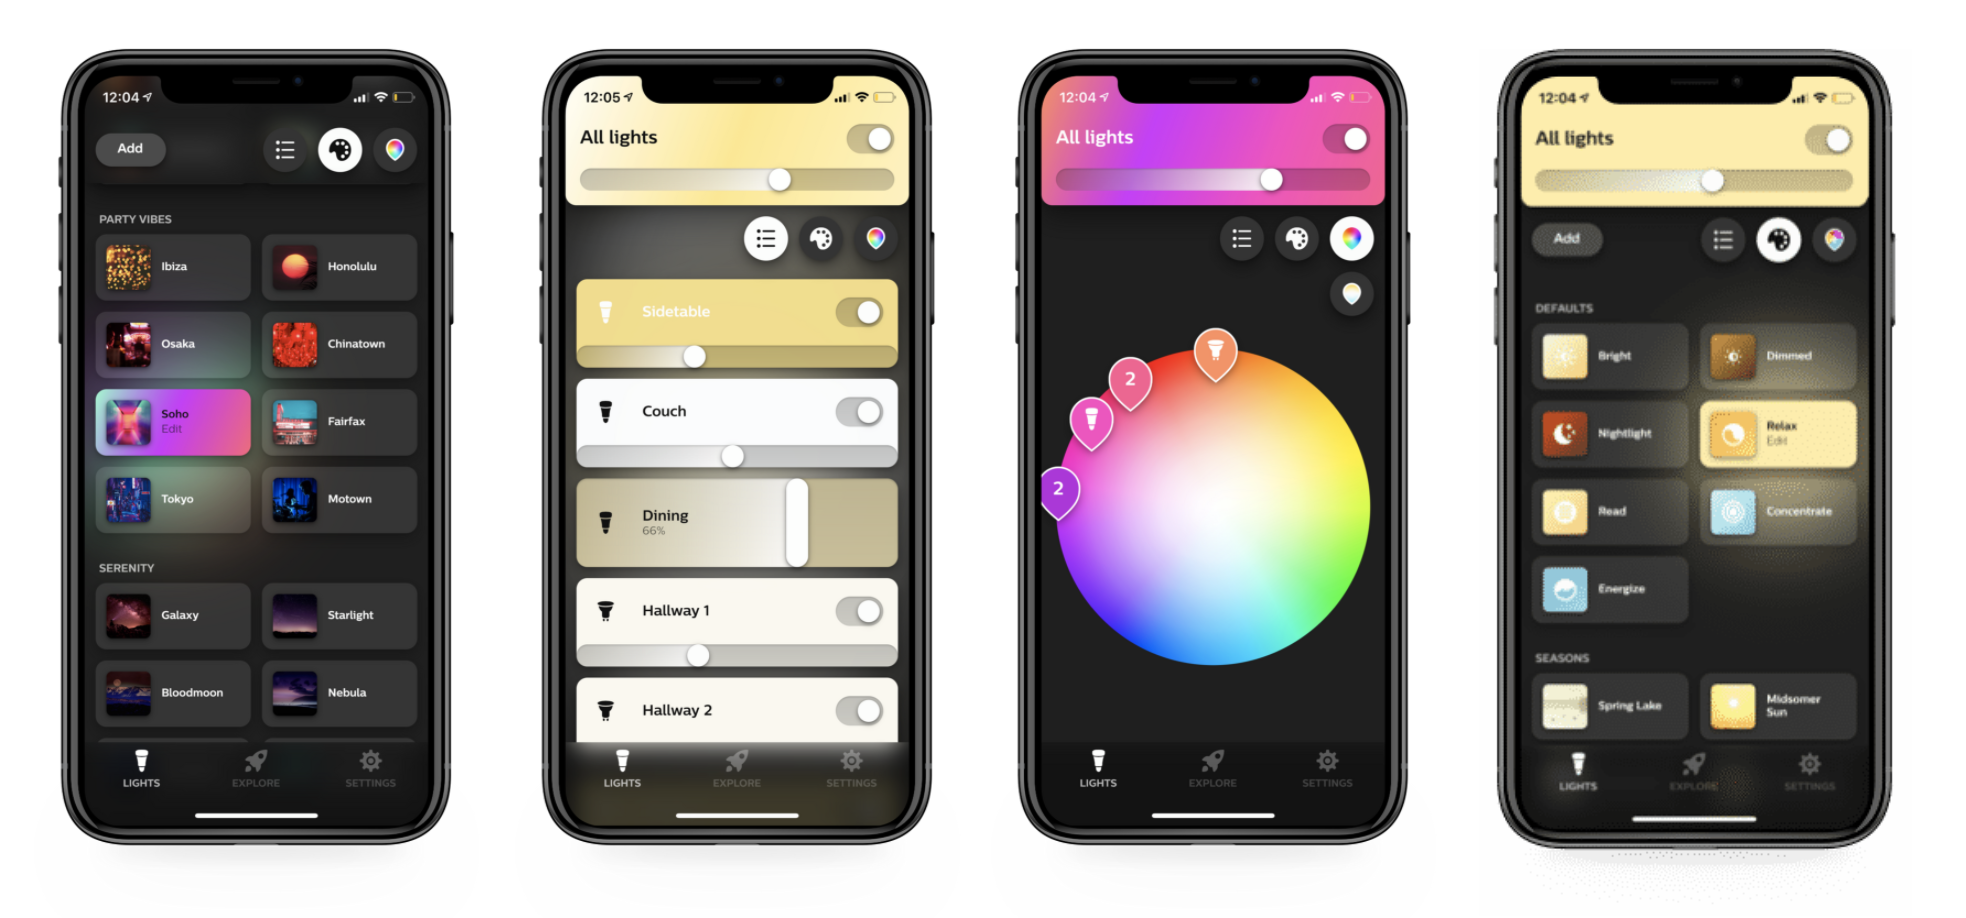 Philips hue app built using flutter